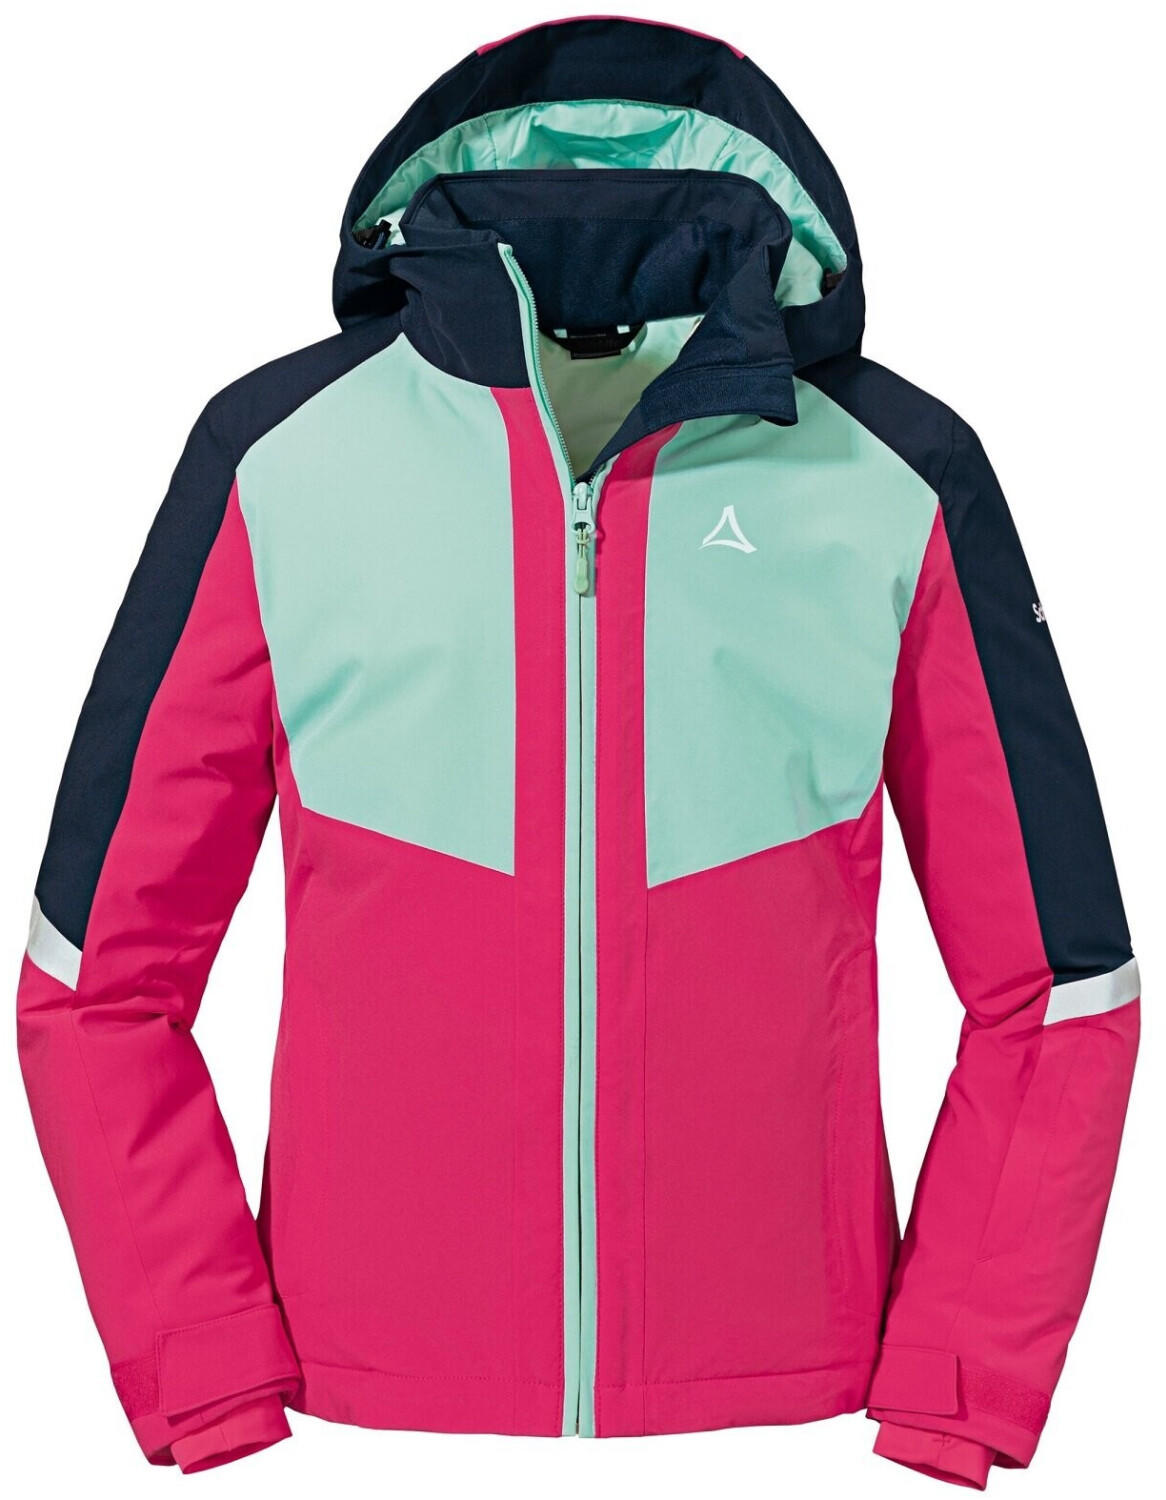 Furgler Jacket Angebote hot 119,95 Schöffel (Oktober Ski Test € ab 2023) pink TOP G